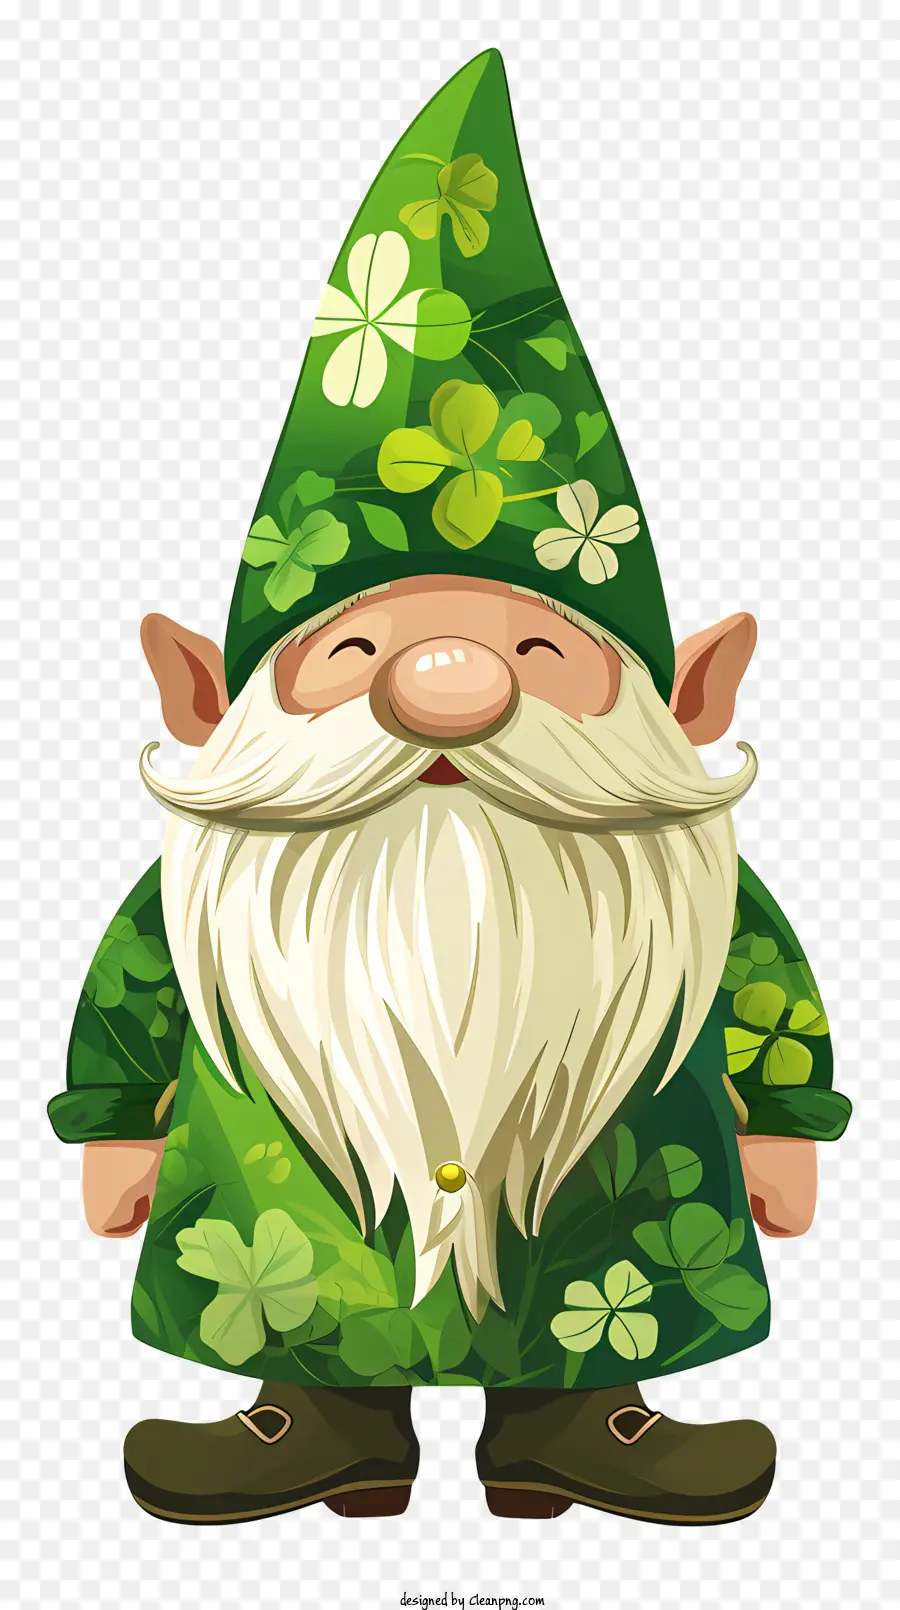 St Patrick's Day gnome hoạt hình gnome quần áo màu xanh lá cây shamrock Mũ xanh - Phim hoạt hình gnome màu xanh lá cây với hoa văn shamrock